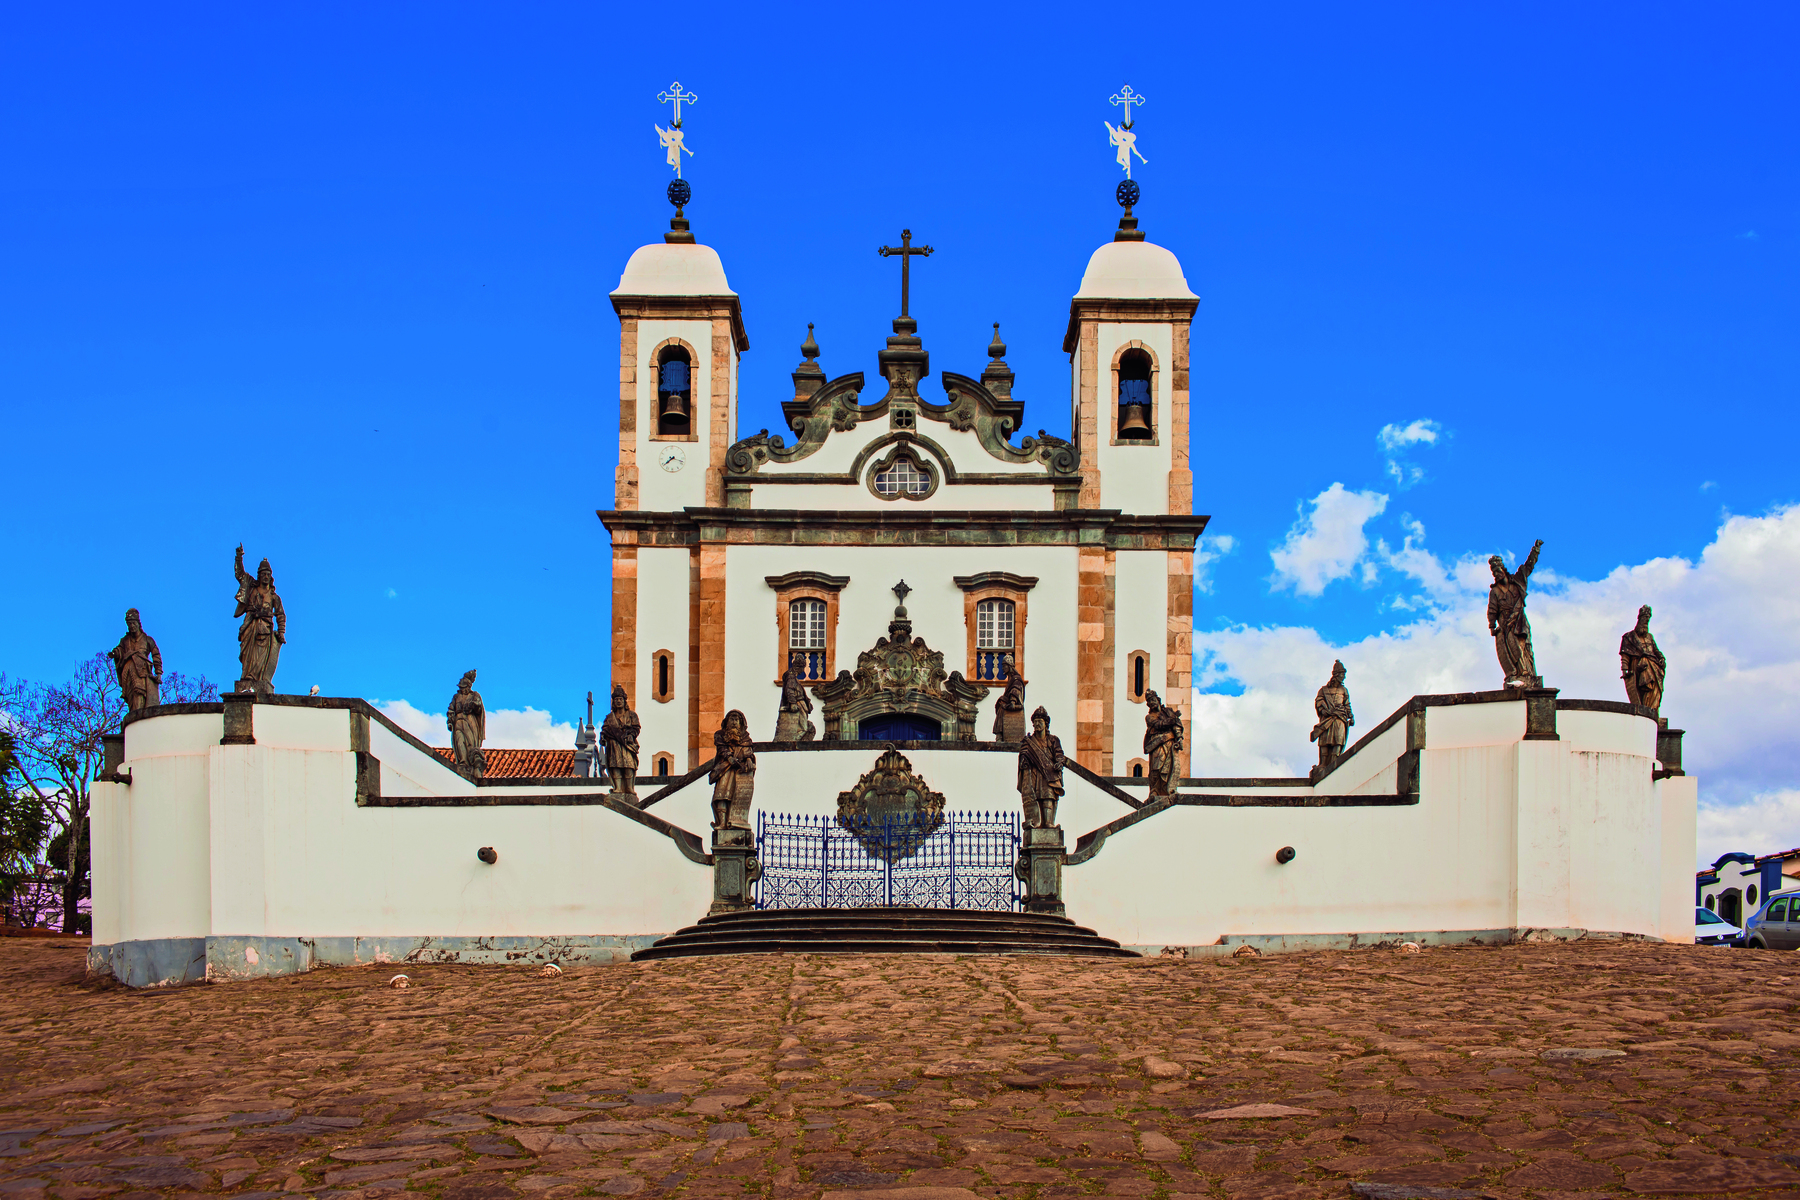 Fotografia. Fachada de uma igreja com paredes brancas, duas torres laterais com tetos em formato de cúpula, uma cruz central, muros a circundando e um portão frontal. Sobre os muros, diversas esculturas.